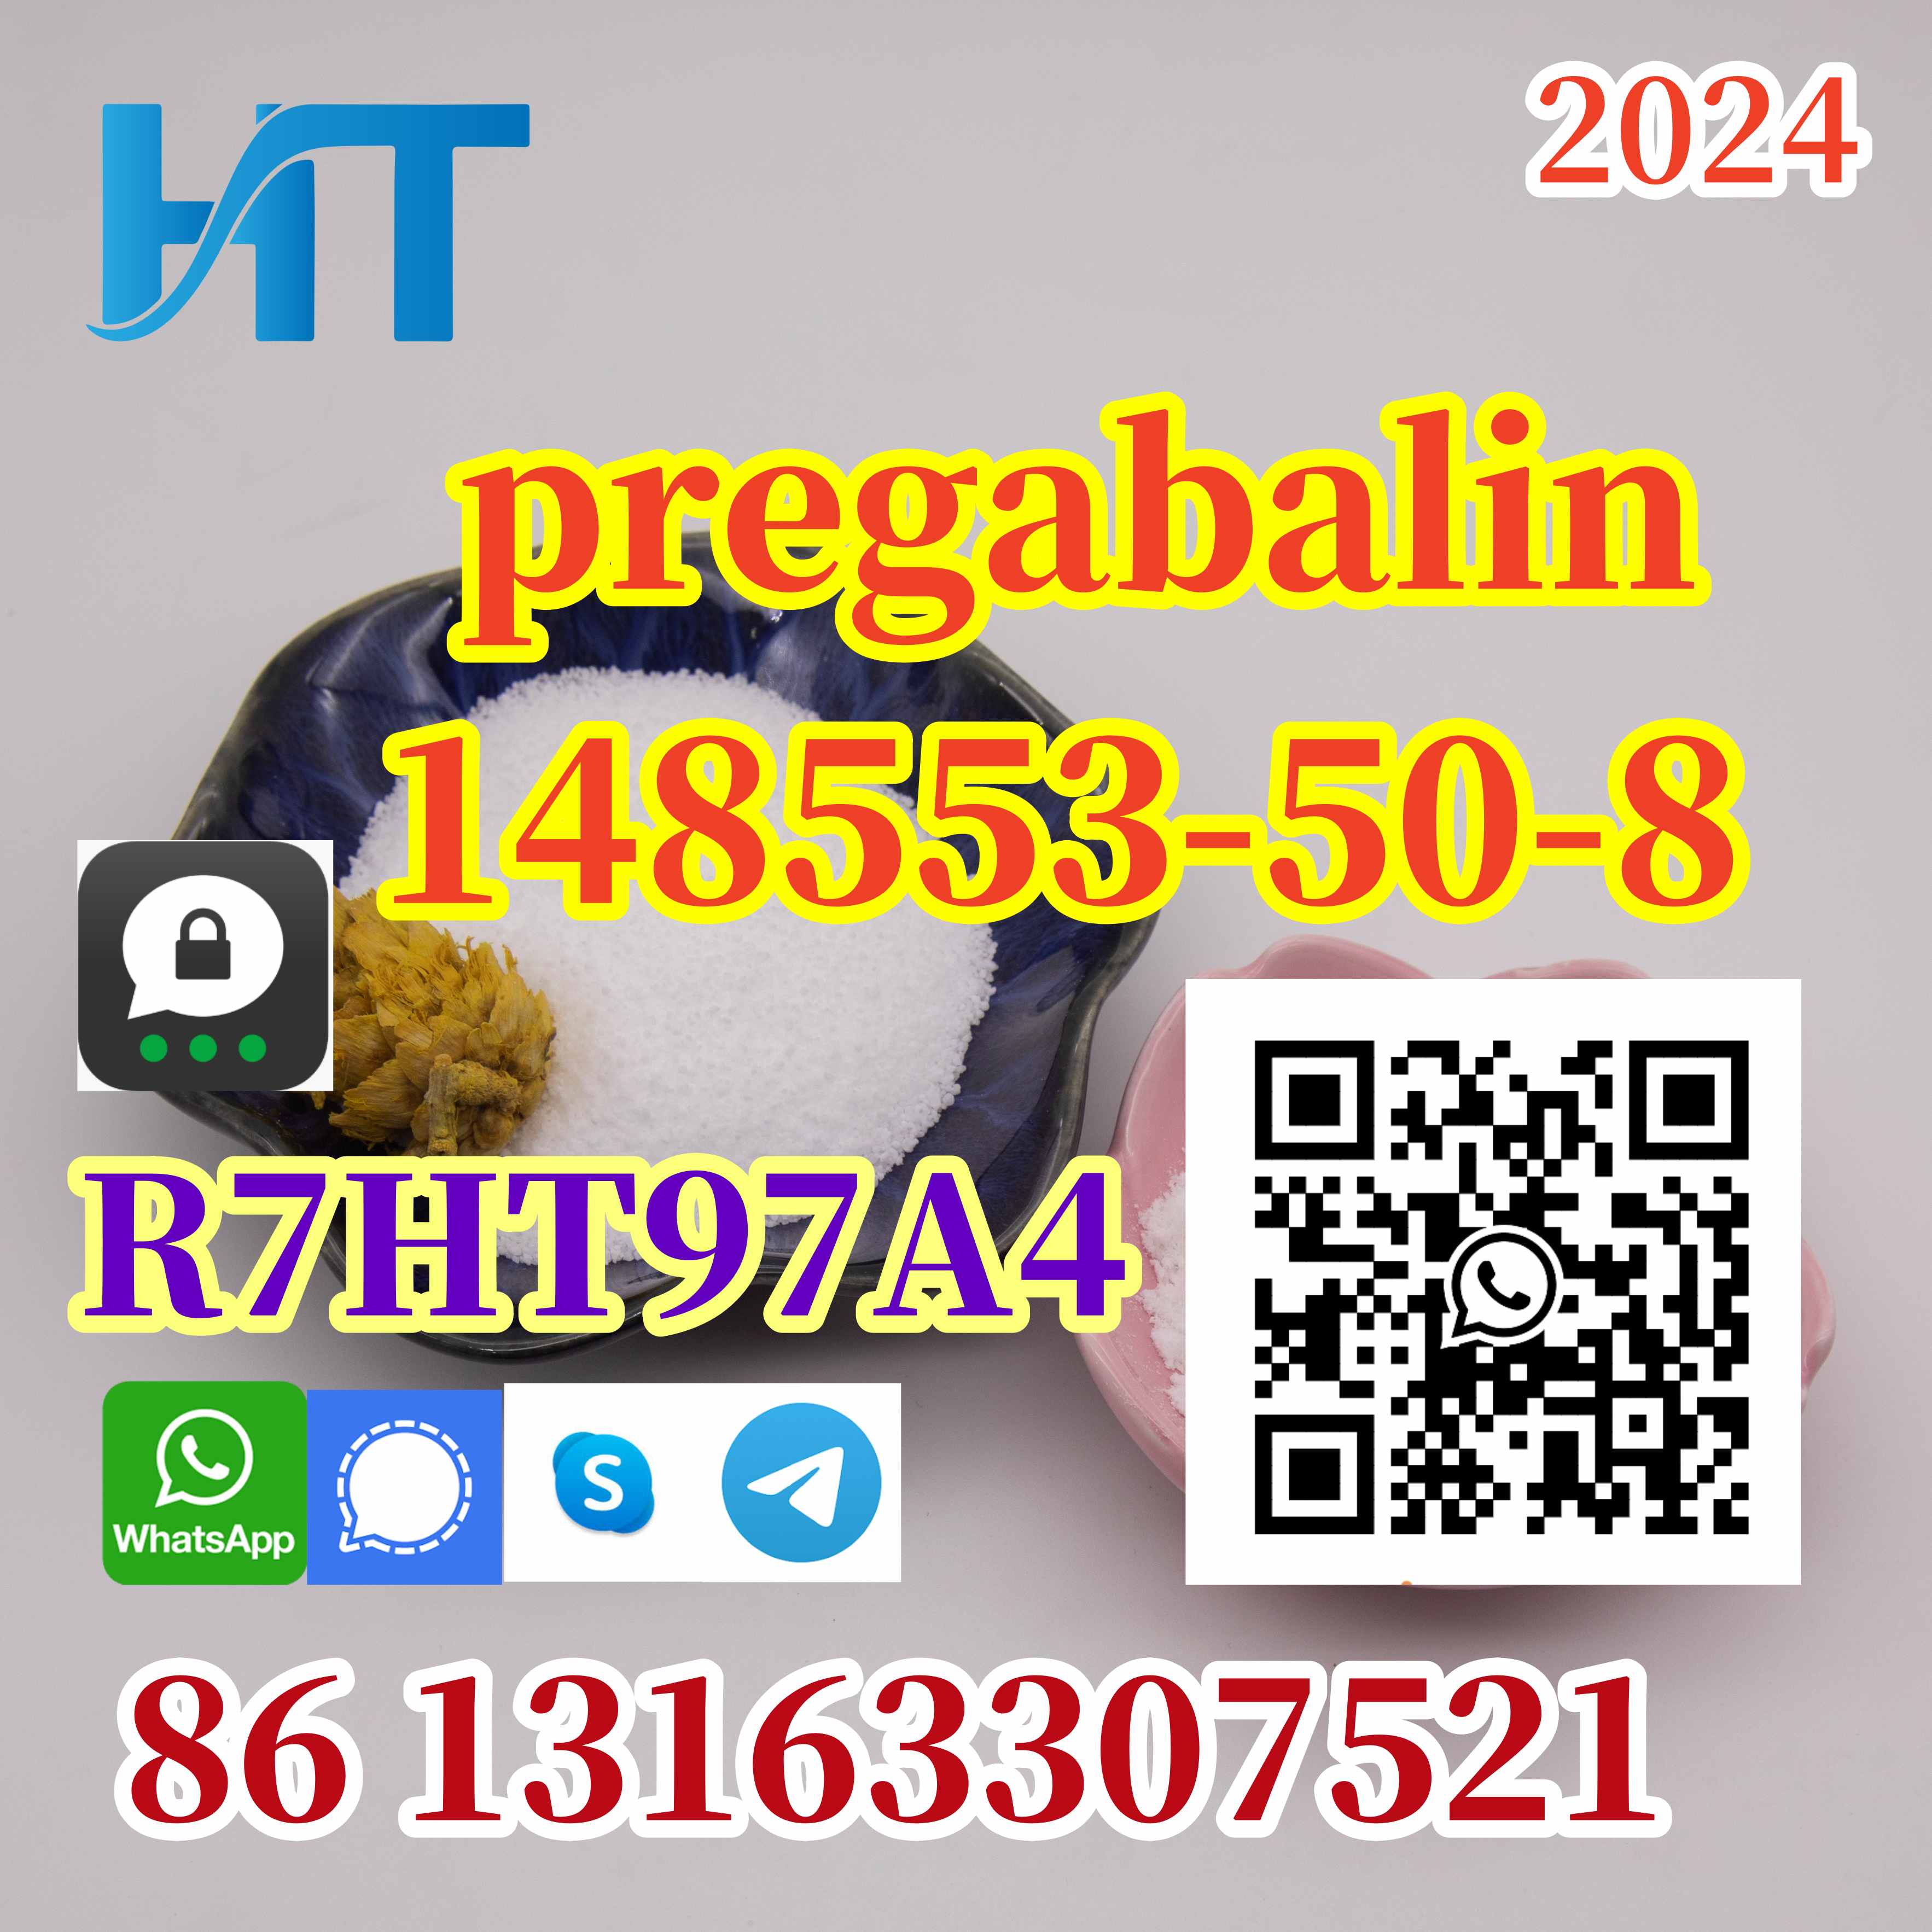 CAS 148553-50-8 Pregabalin CAS 148553-50-8 Pregabalin +8613163307521